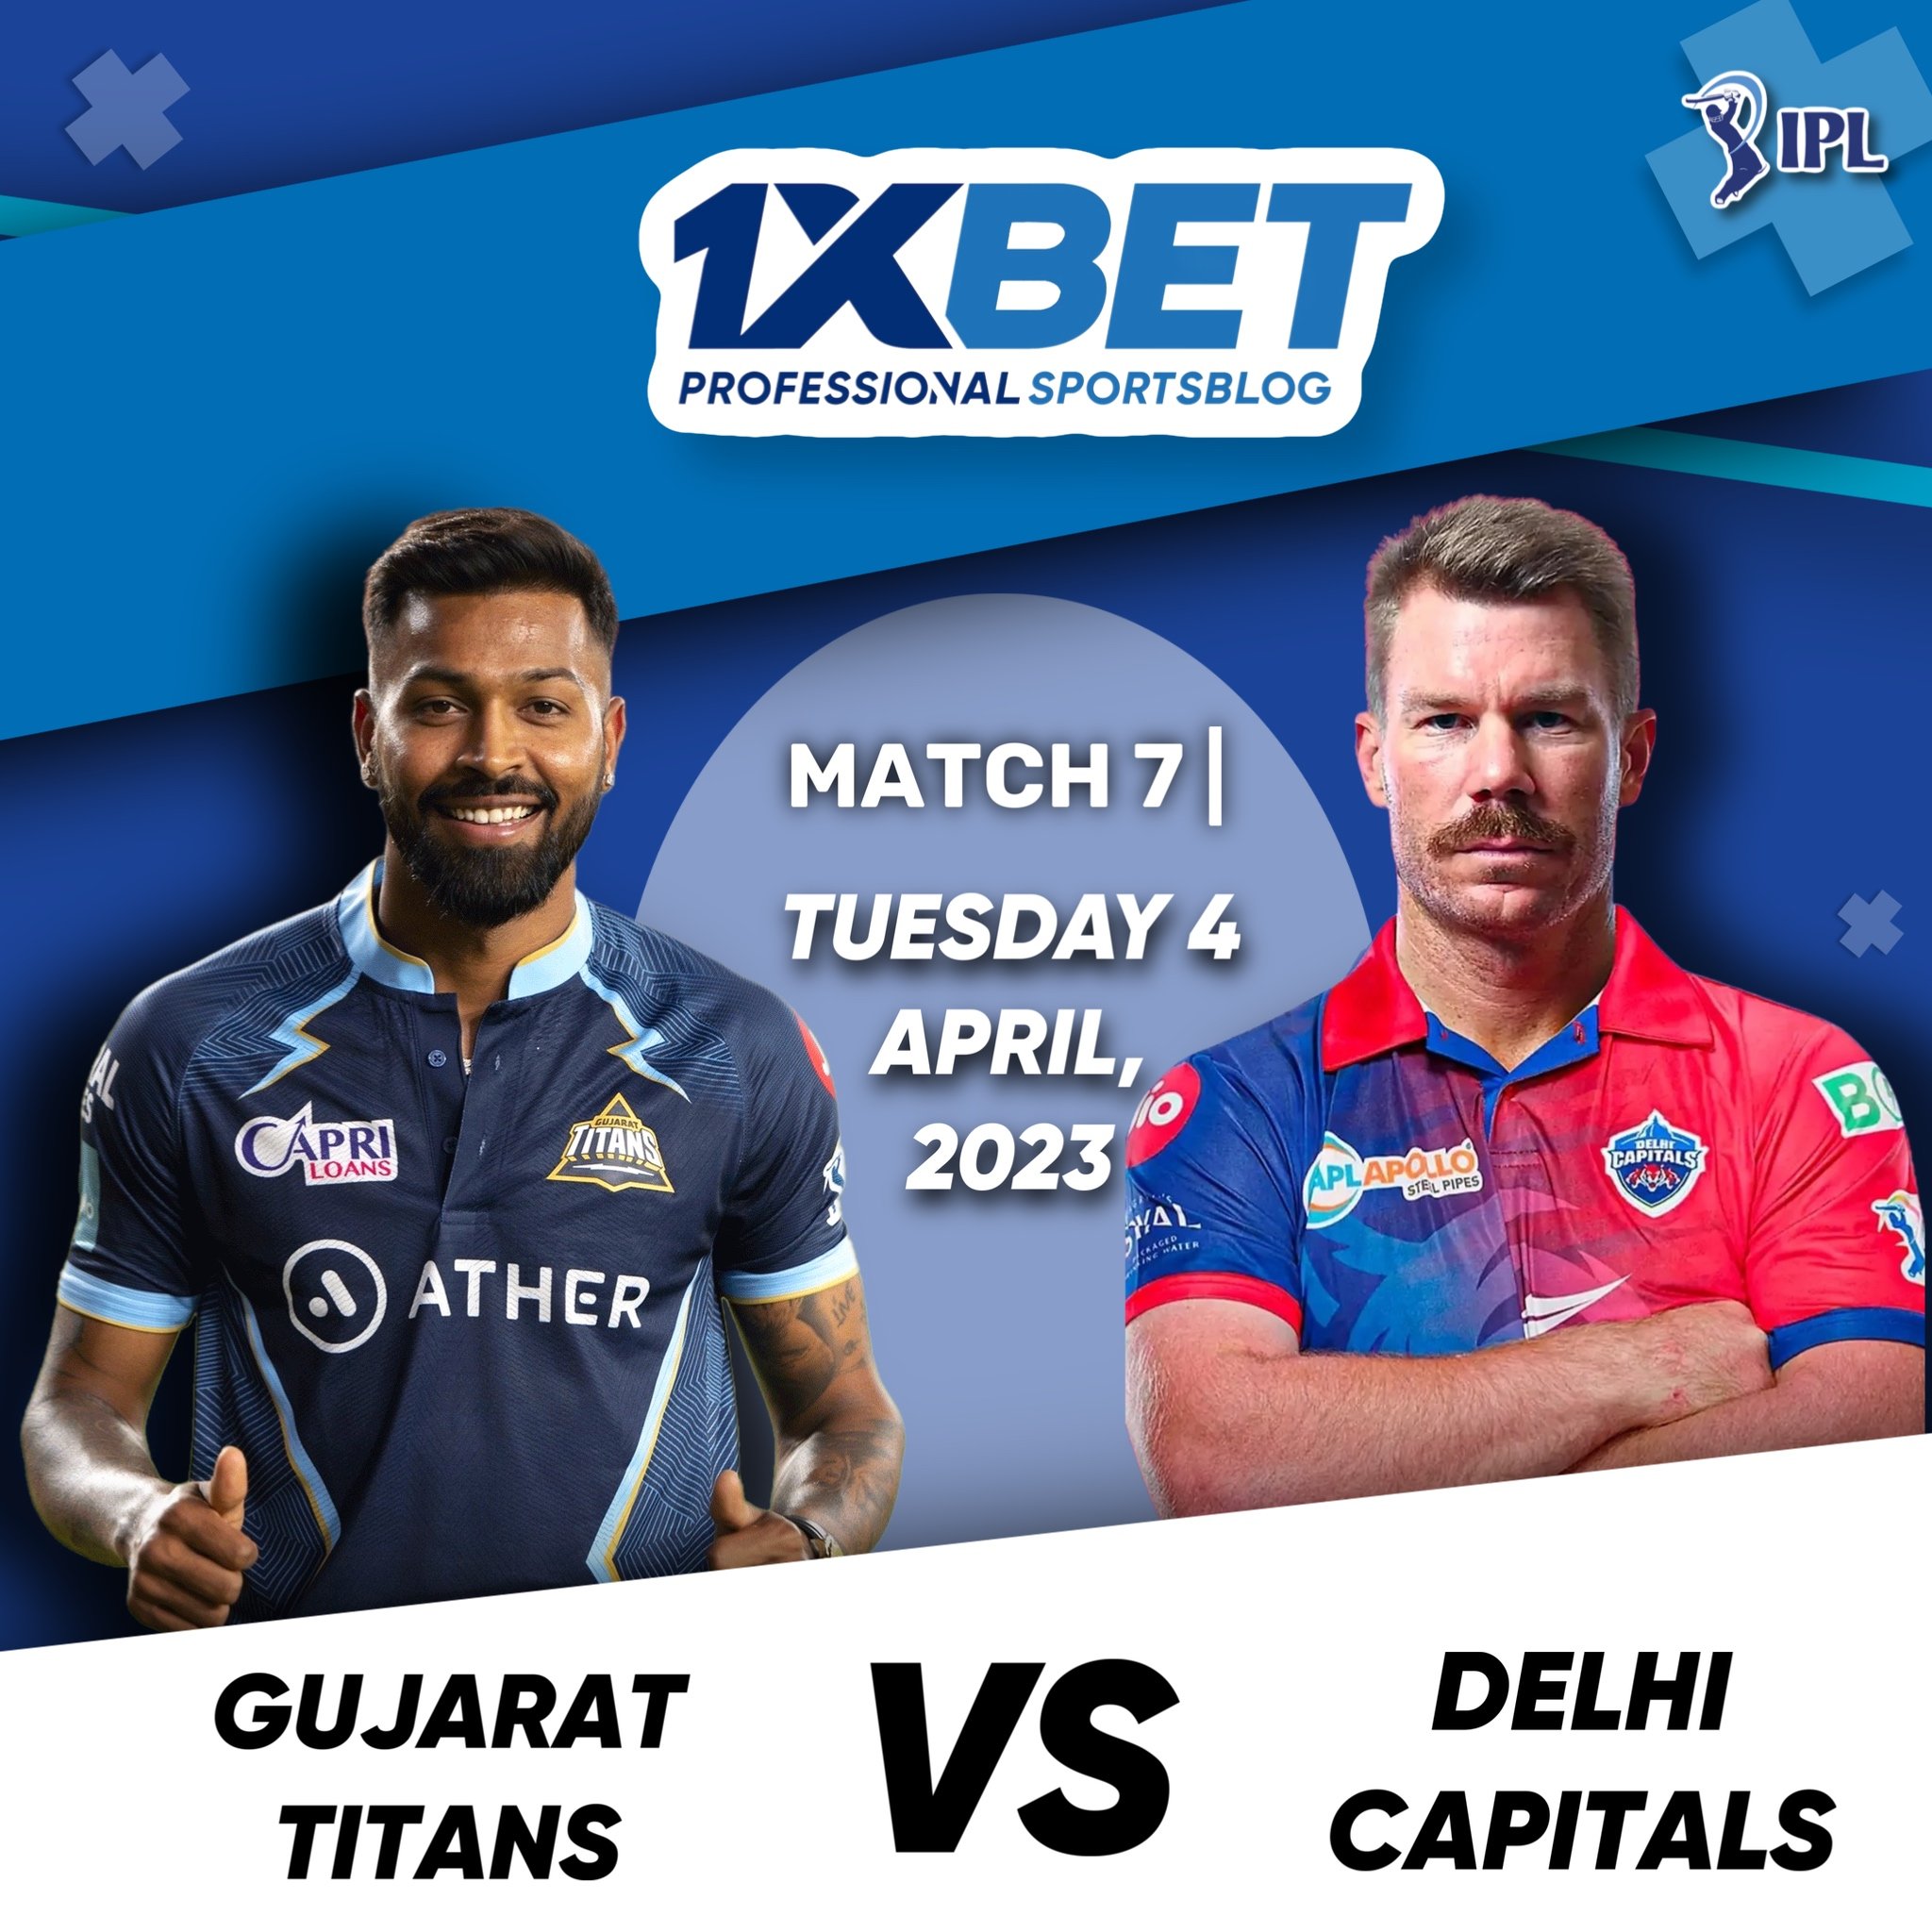 Gujarat Titans vs Delhi Capitals, IPL 2023, 7th Match Analysis